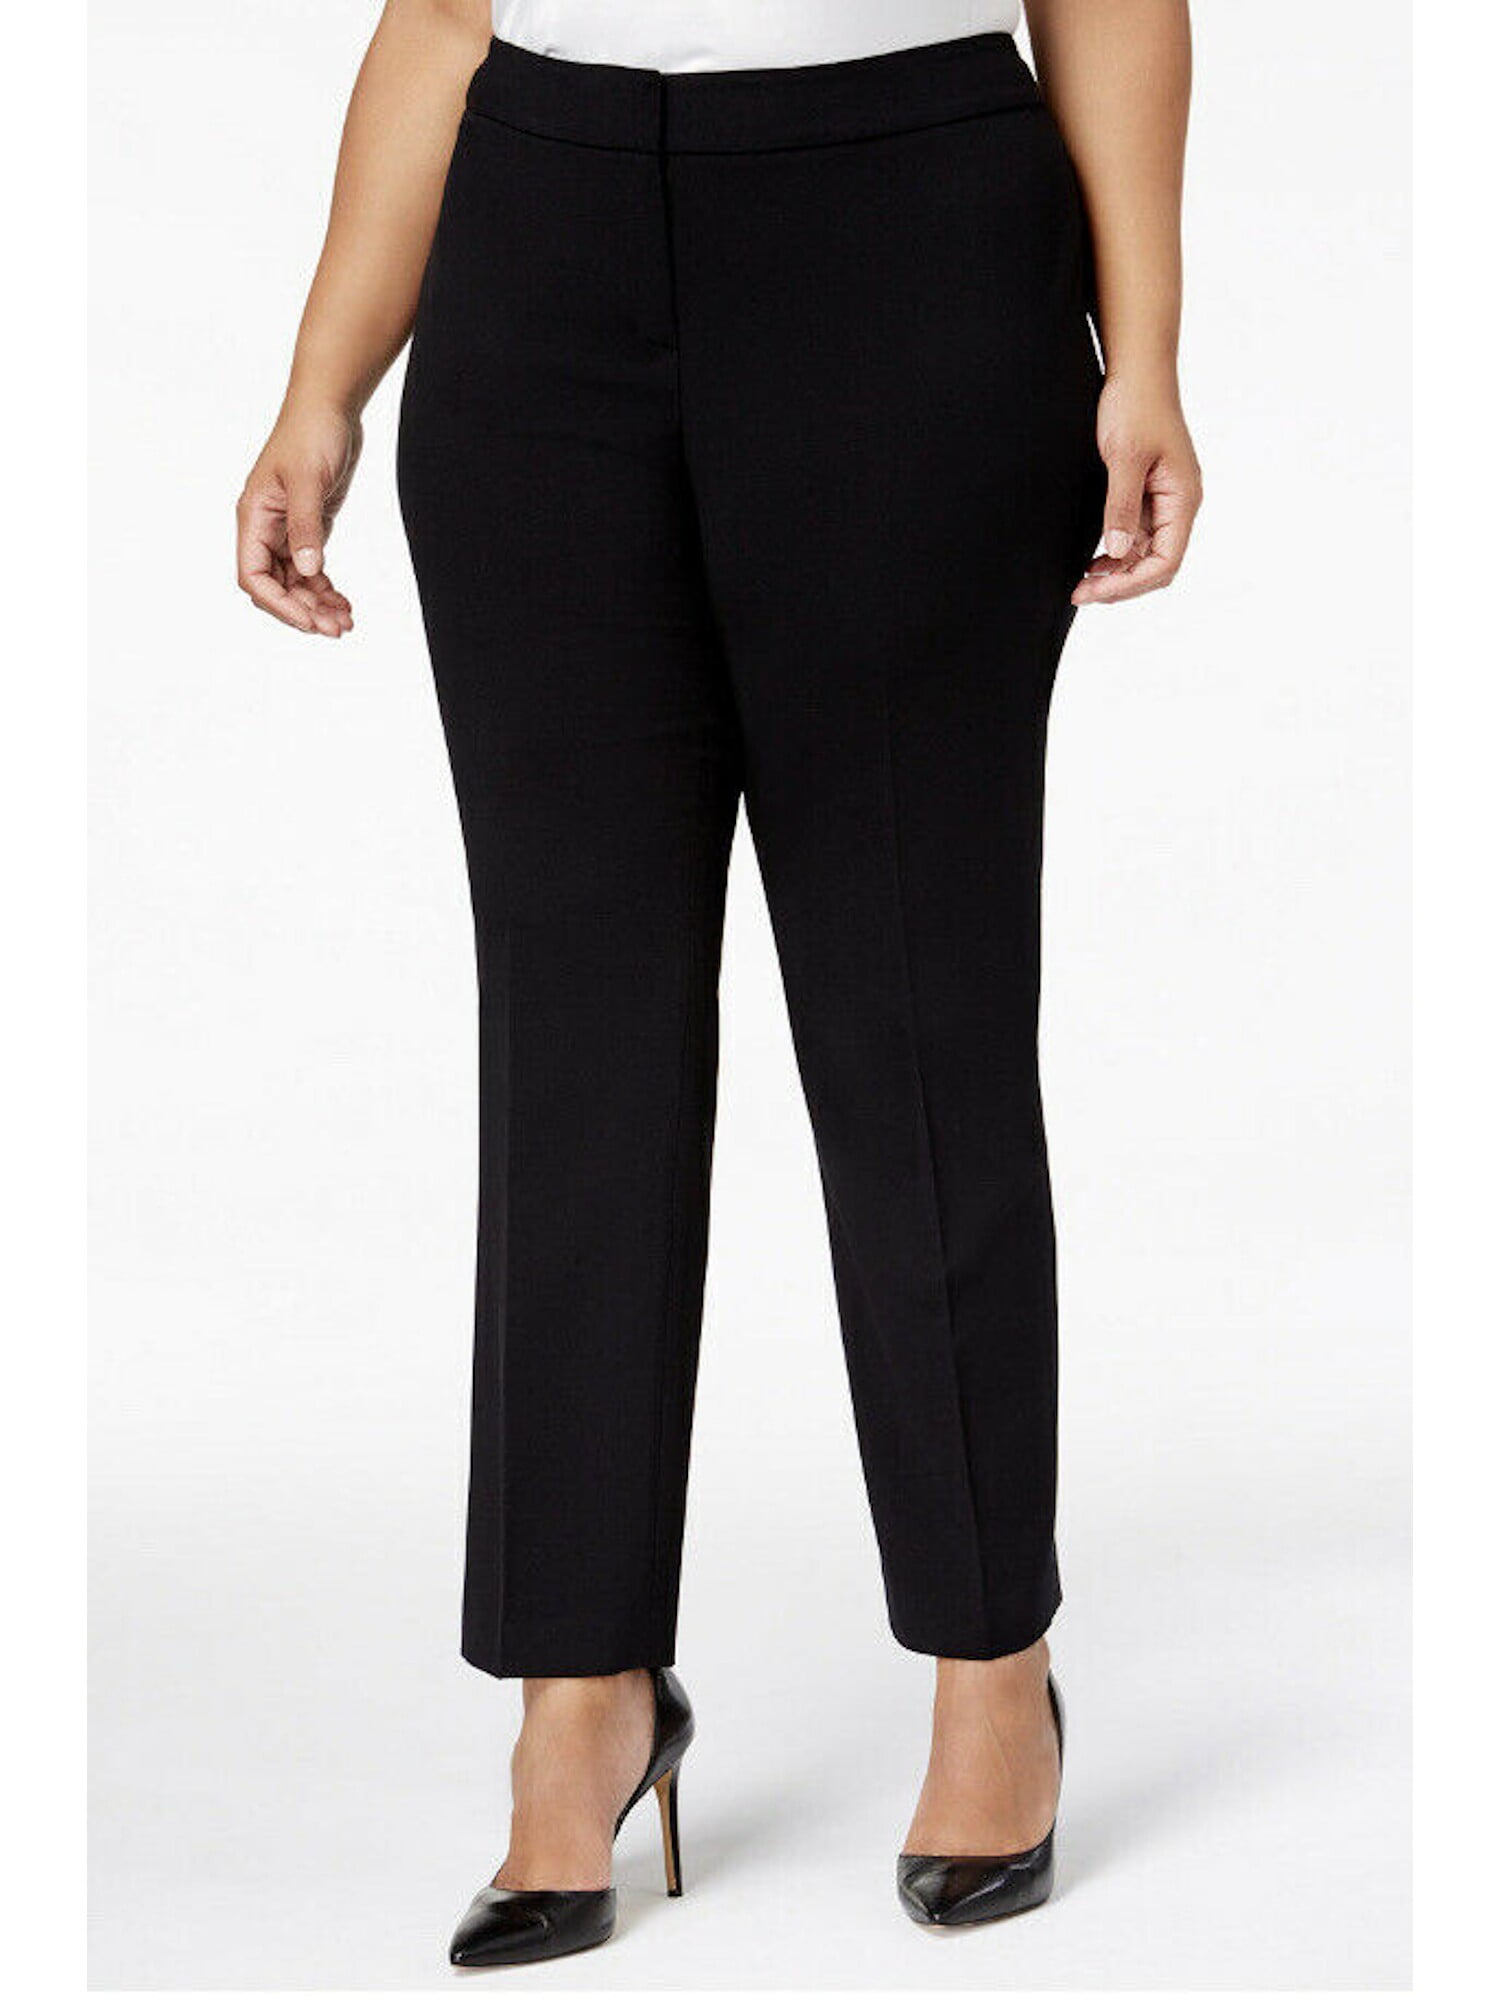 Nine West - NINE WEST Womens Black Wear To Work Pants Size 14W ...